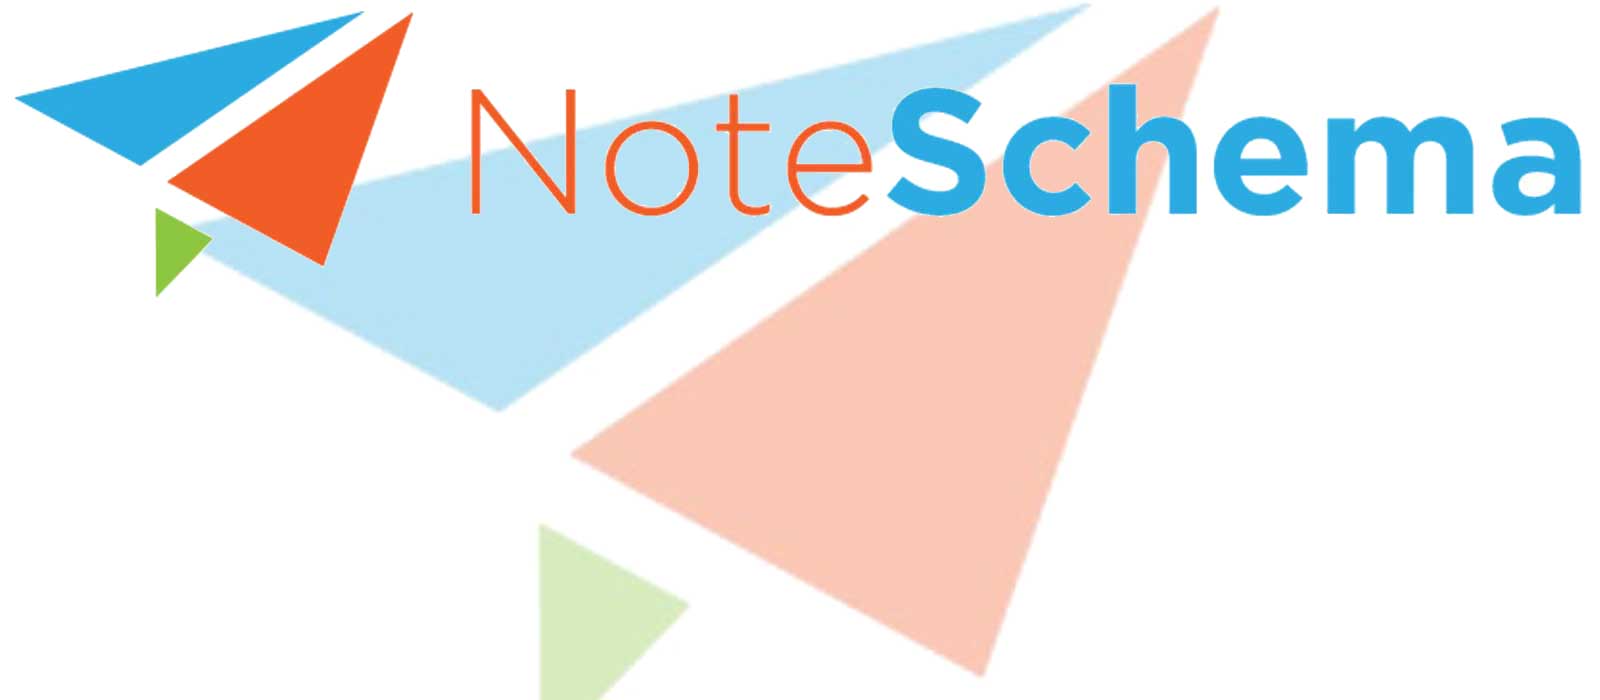 Note Schema - Portfolio - Cipherhex technology